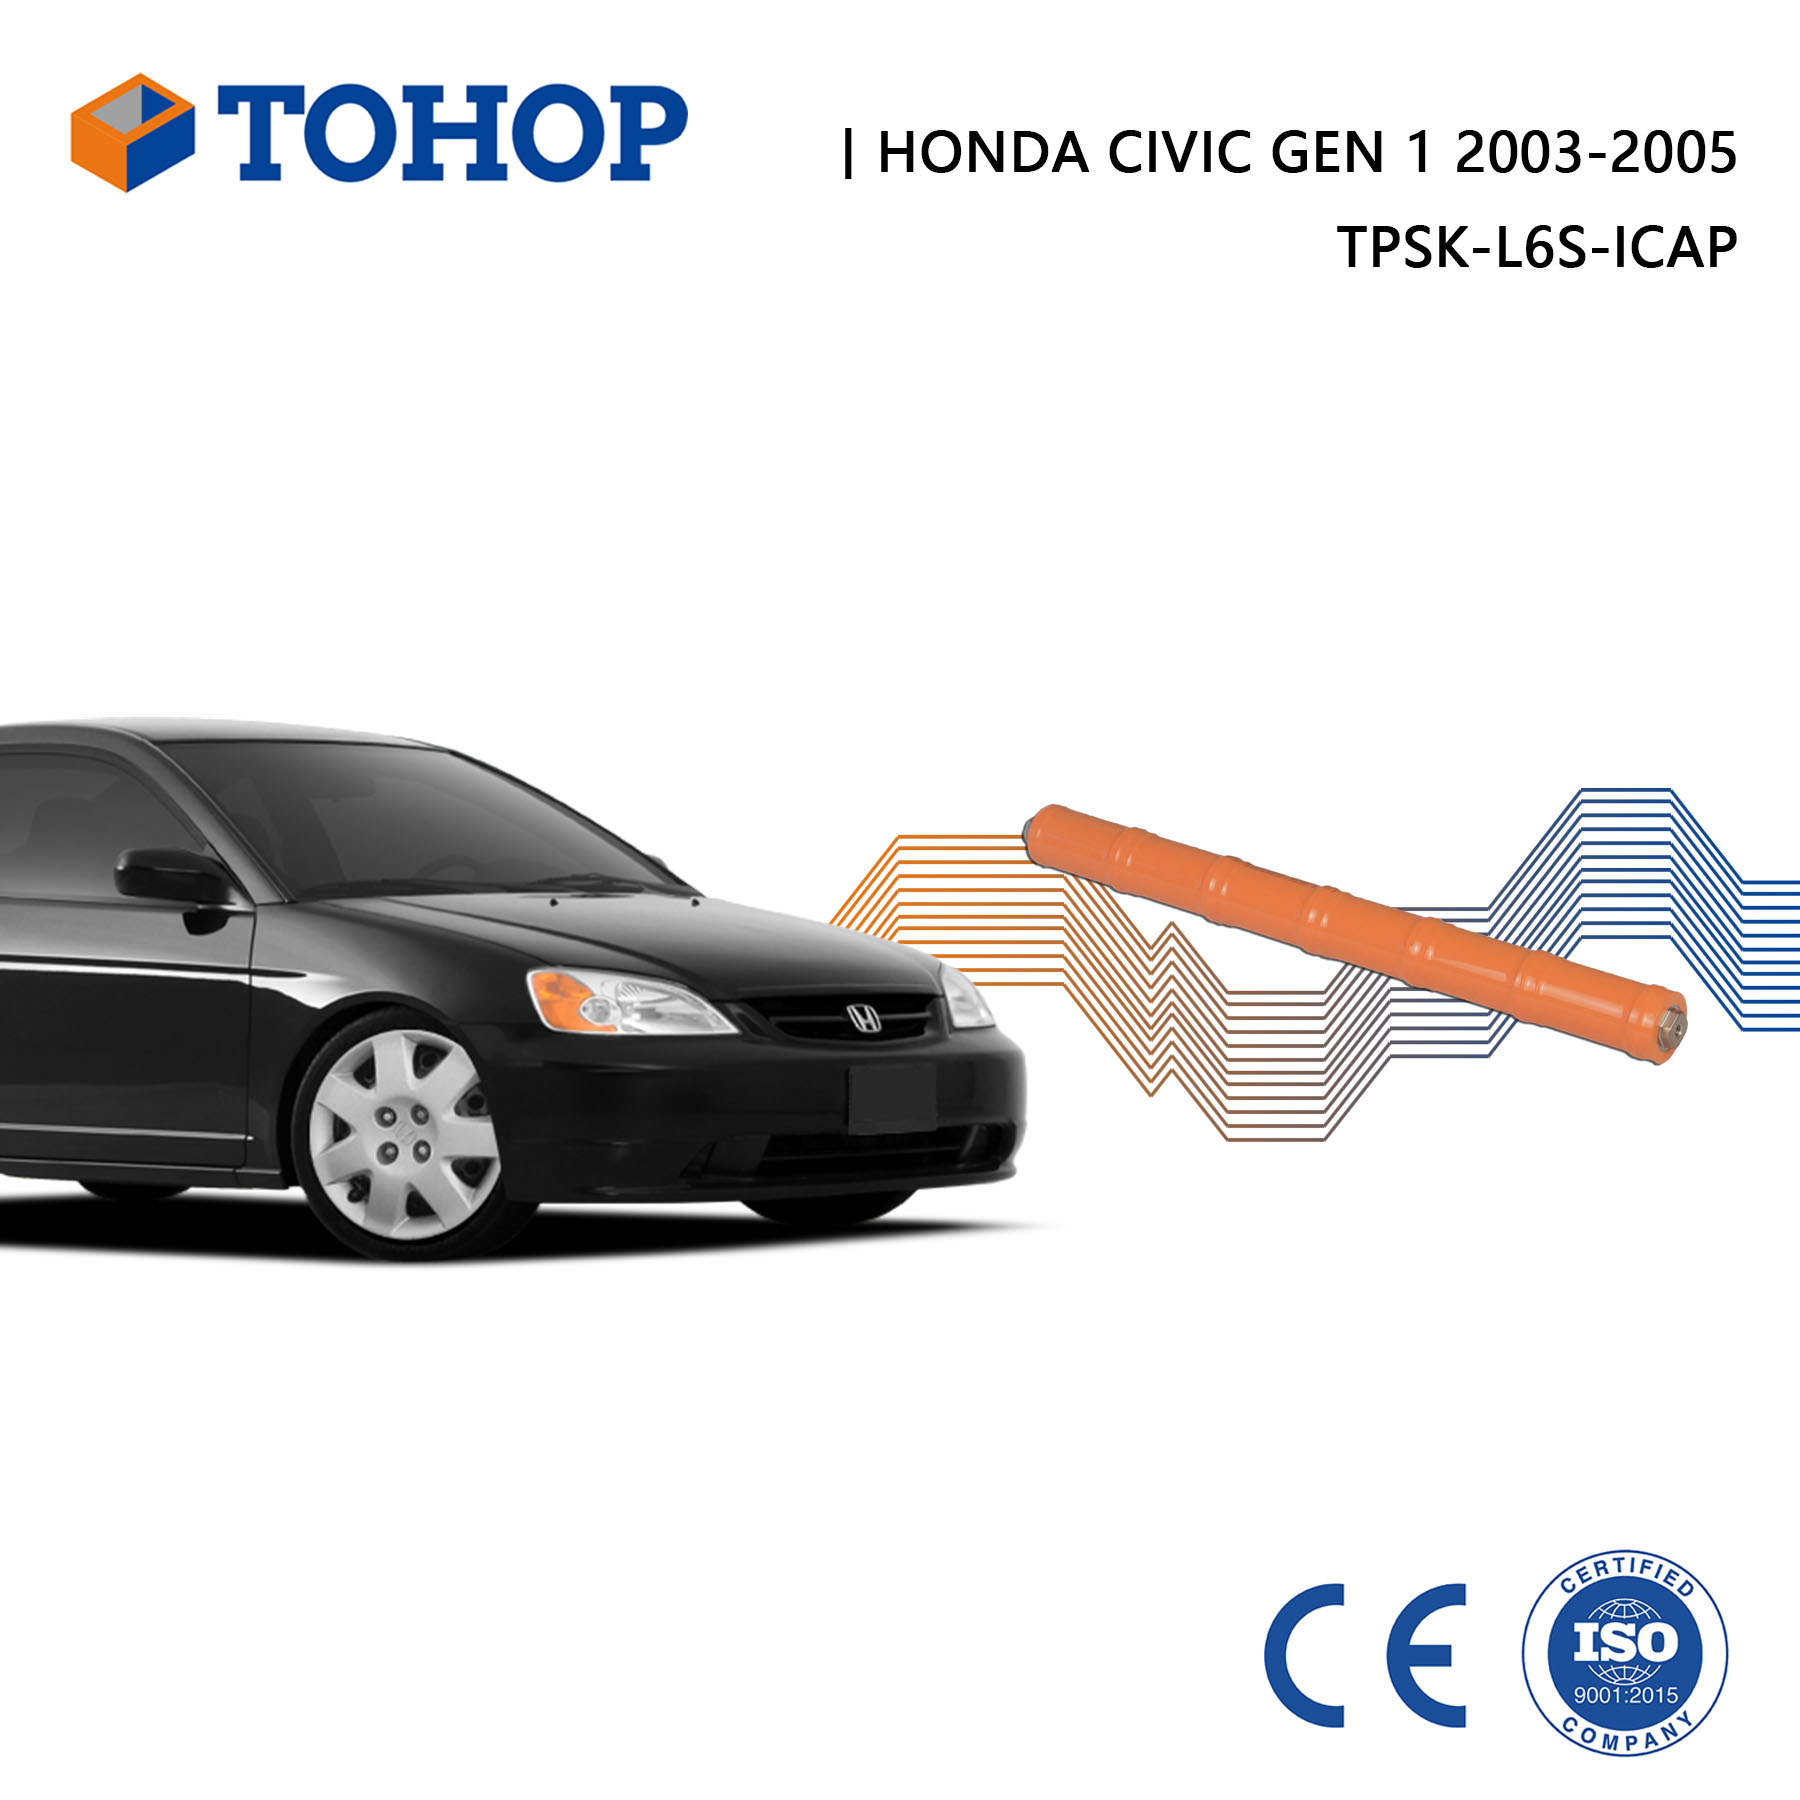 Batterie hybride Honda Civic Gen 1 2005 toute nouvelle cellule de batterie hybride 7.2V 6.5Ah